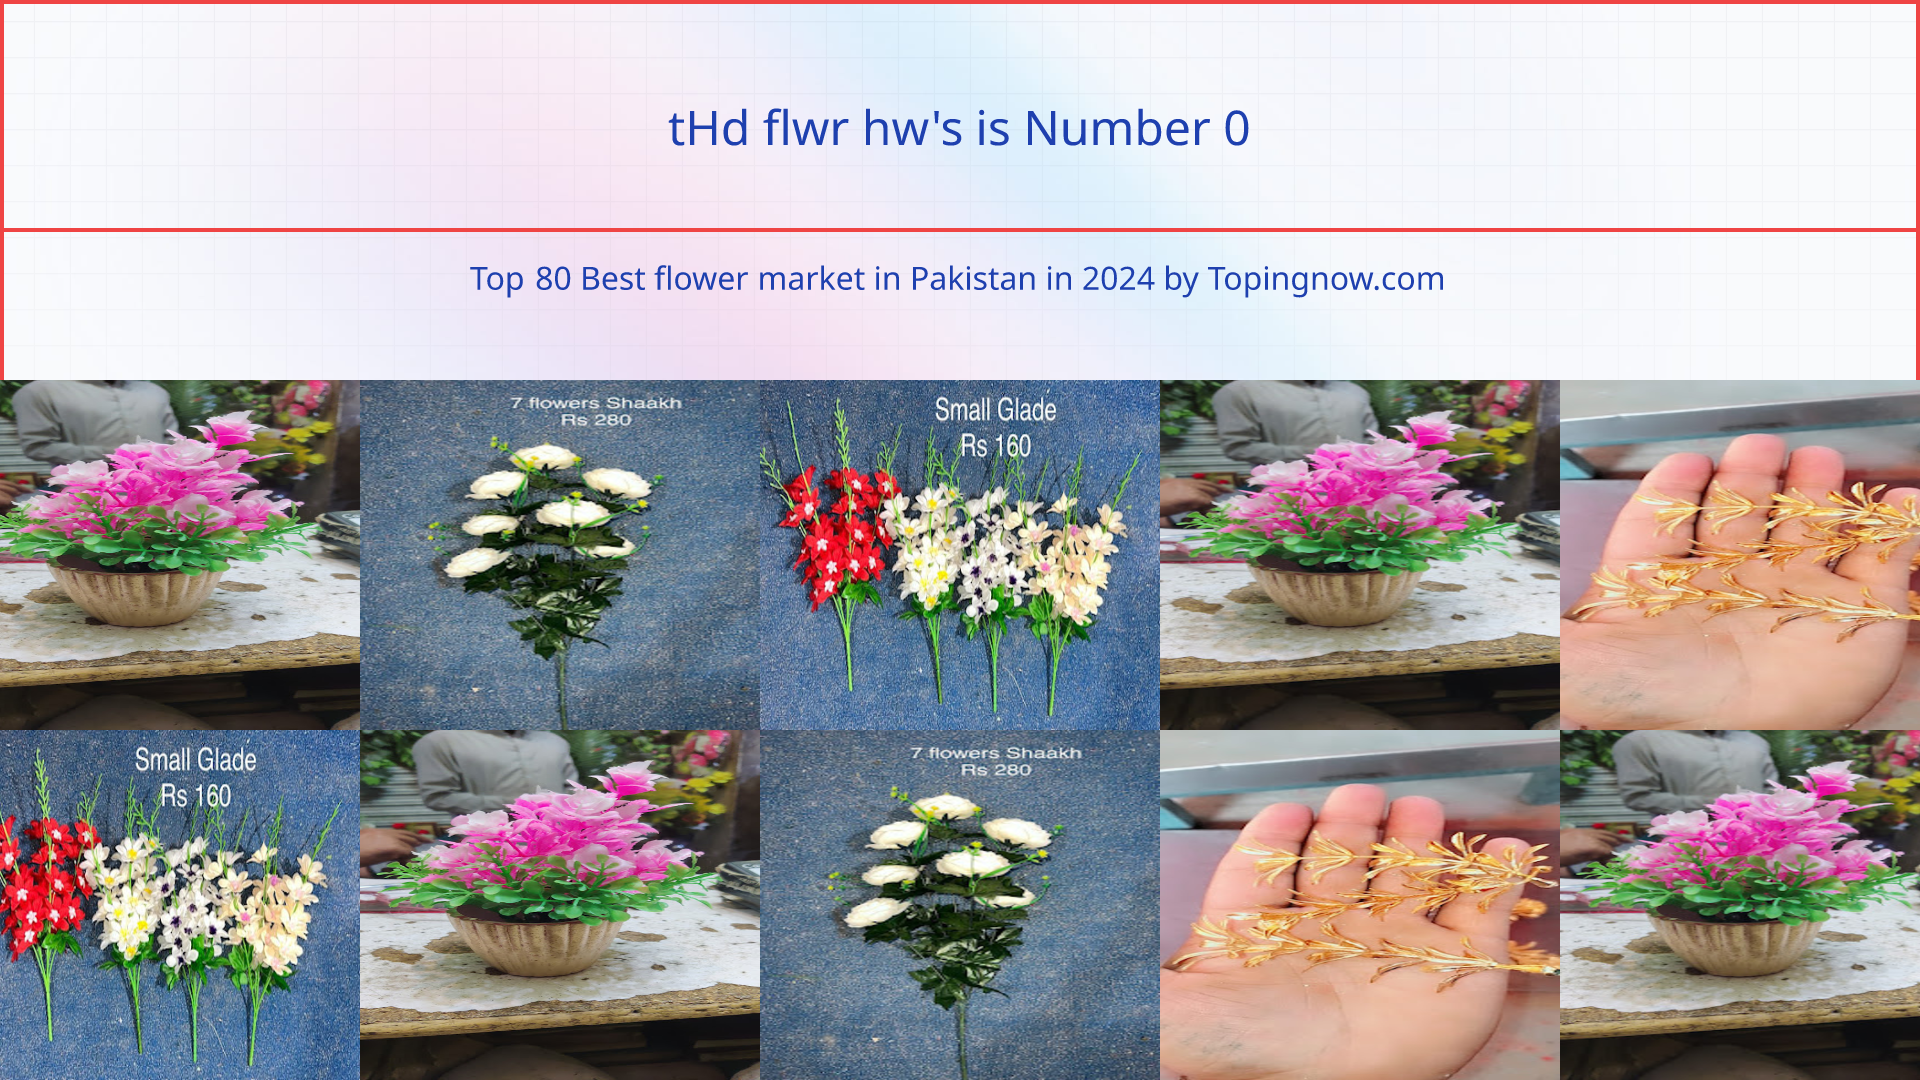 tHd flwr hw's: Top 80 Best flower market in Pakistan in 2024